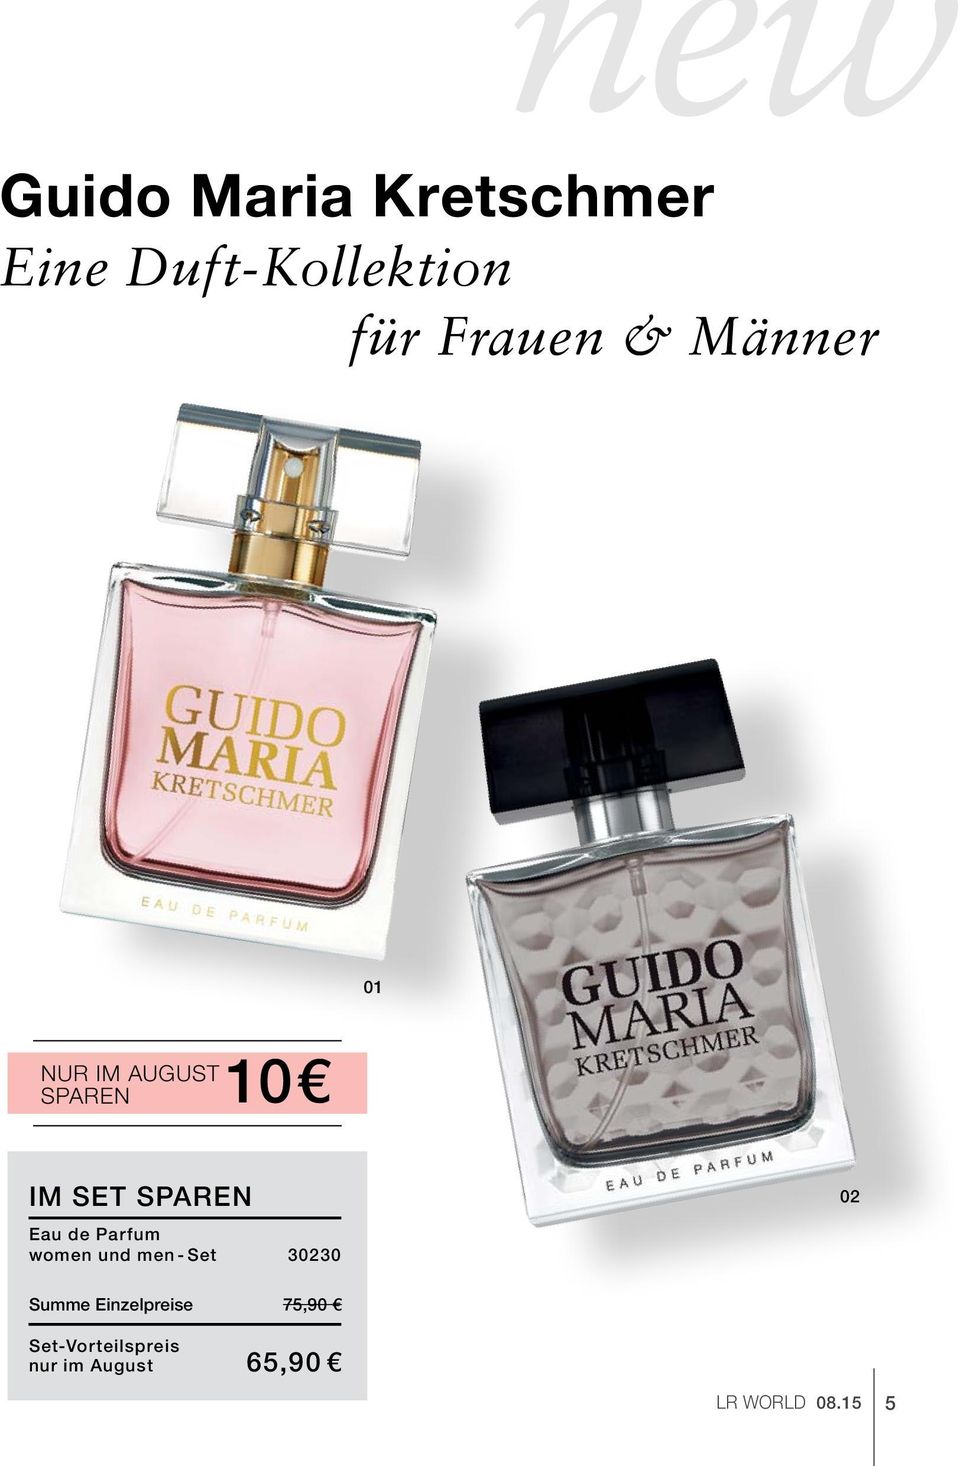 Parfum women und men-set 30230 02 Summe Einzelpreise